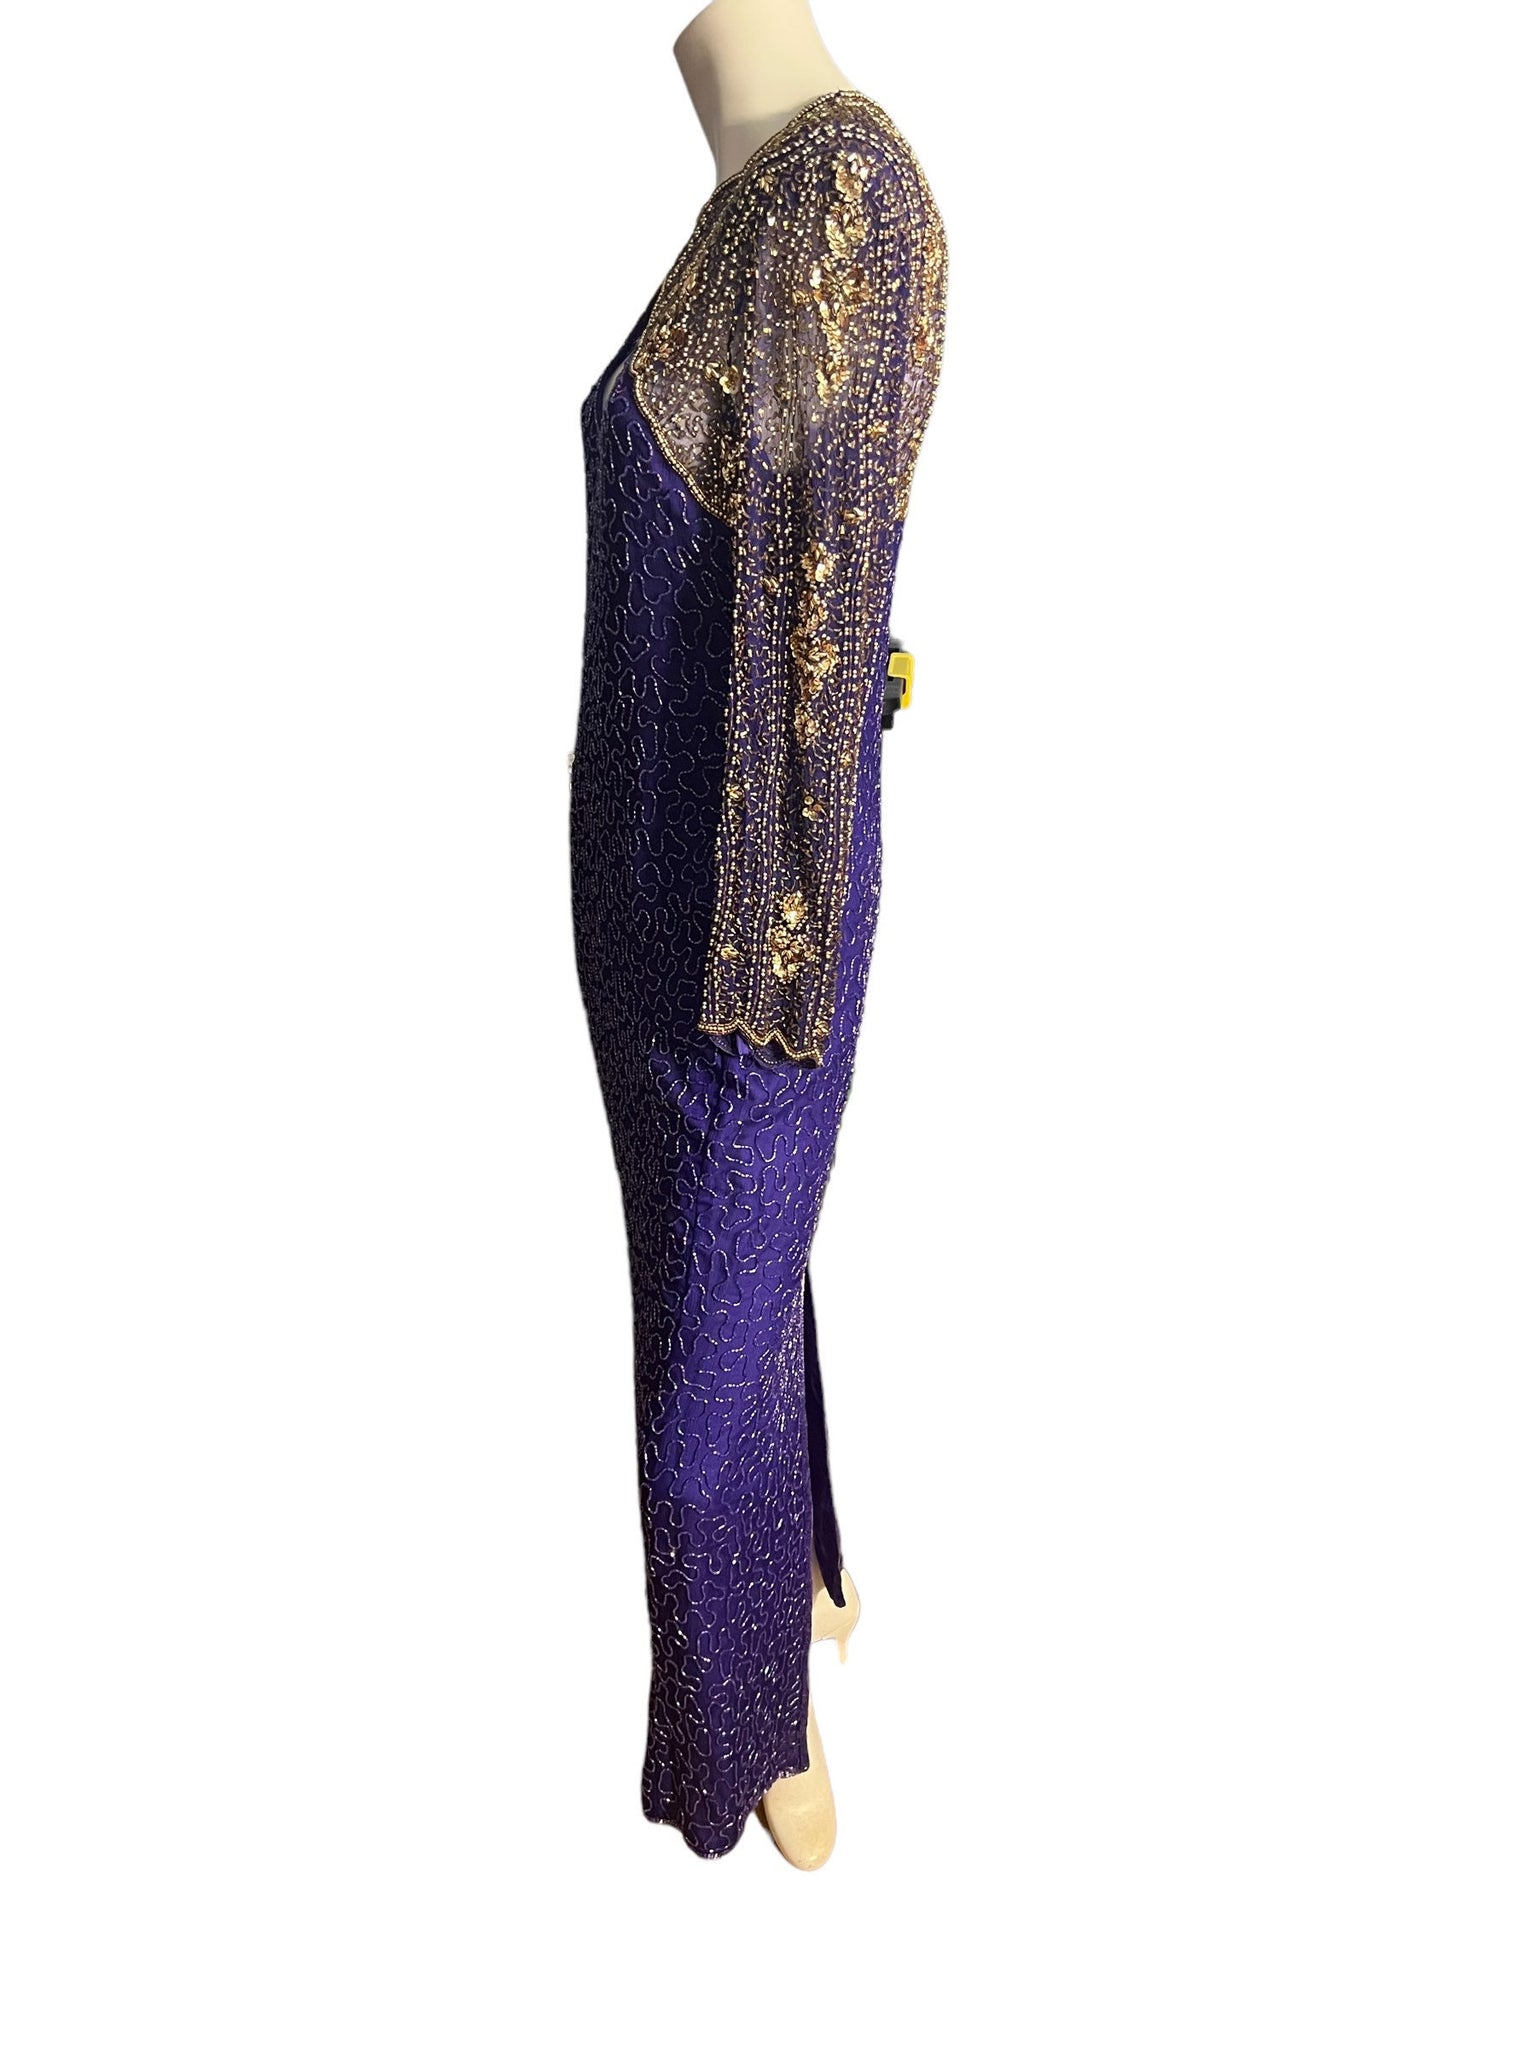 Vintage 80's purple gold sequin bead dress M